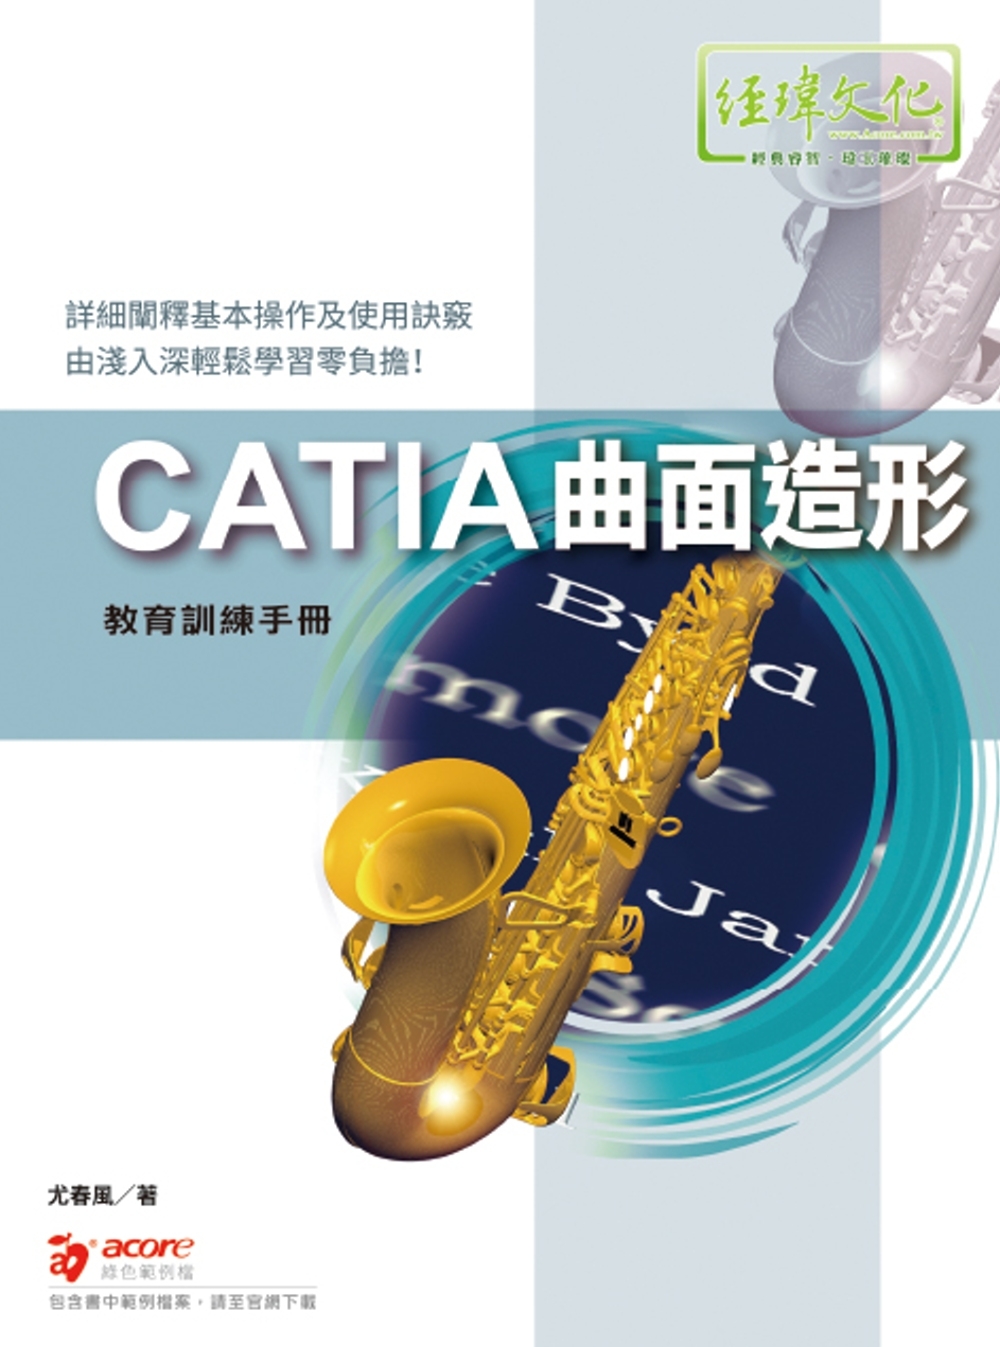 CATIA 曲面造形 教育訓練手冊